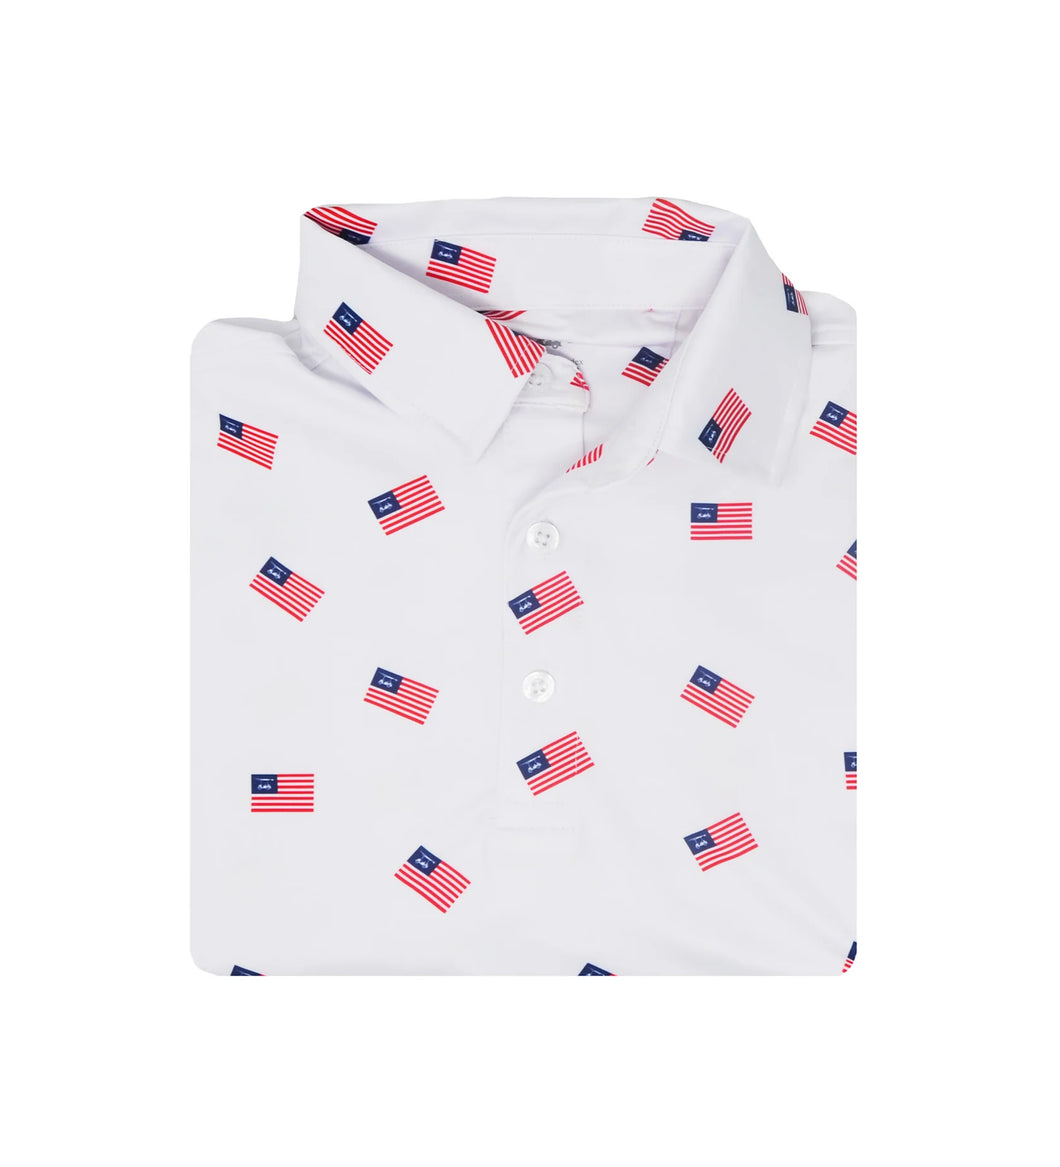 Bald Head Blues Golf Shirt - White USA Flag